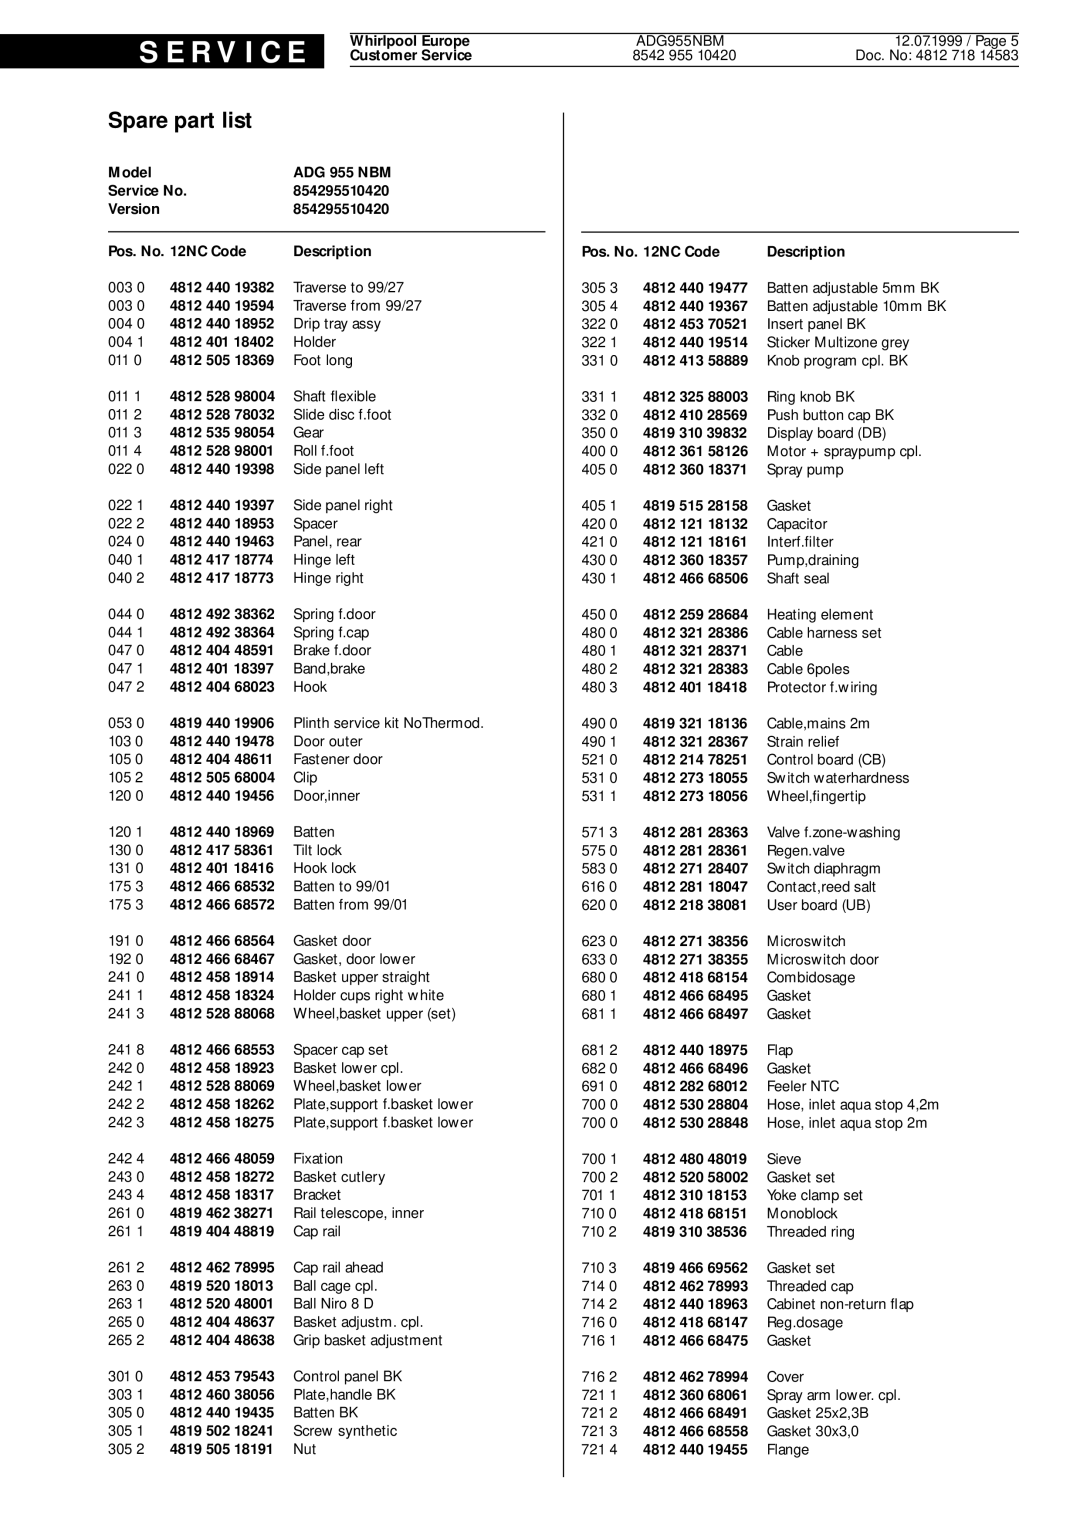 Whirlpool ADG 955 NBM service manual Spare part list, S E R V I C E 